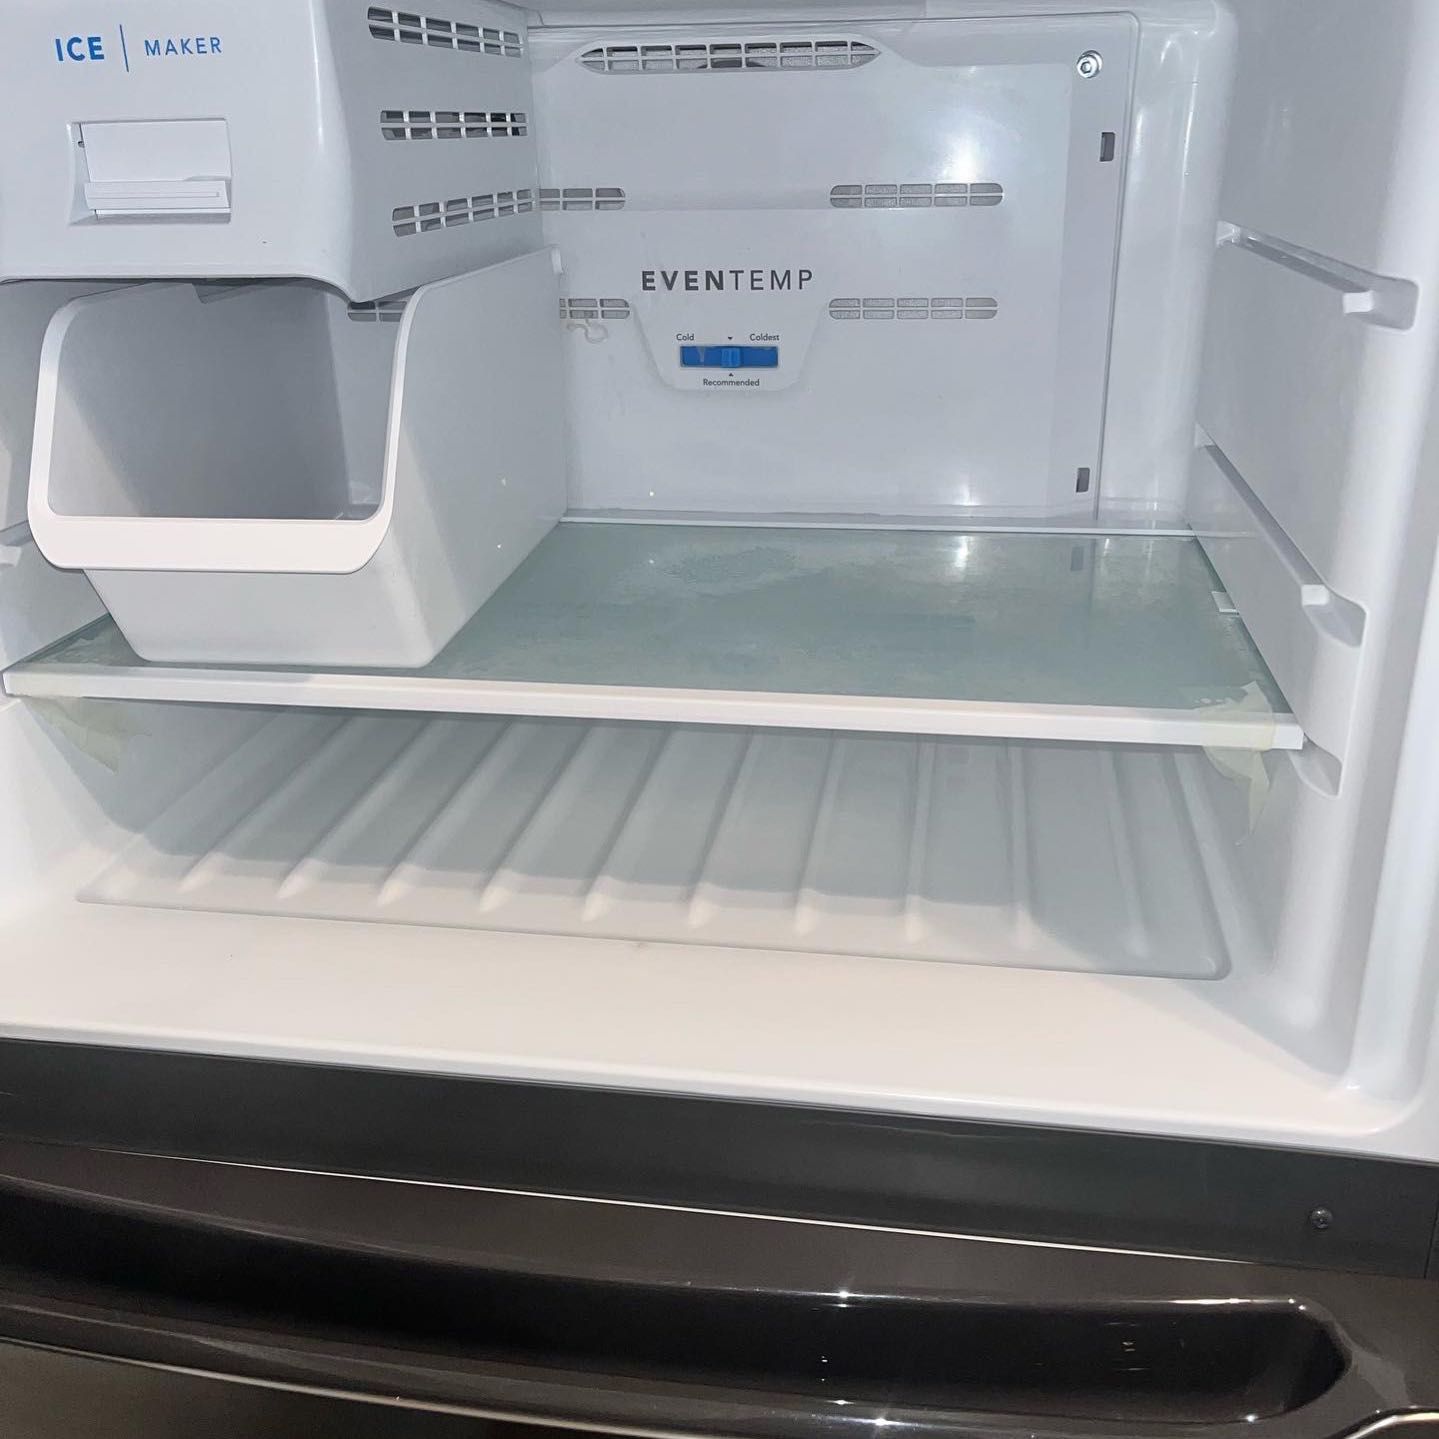 Refrigerator clean out portfolio